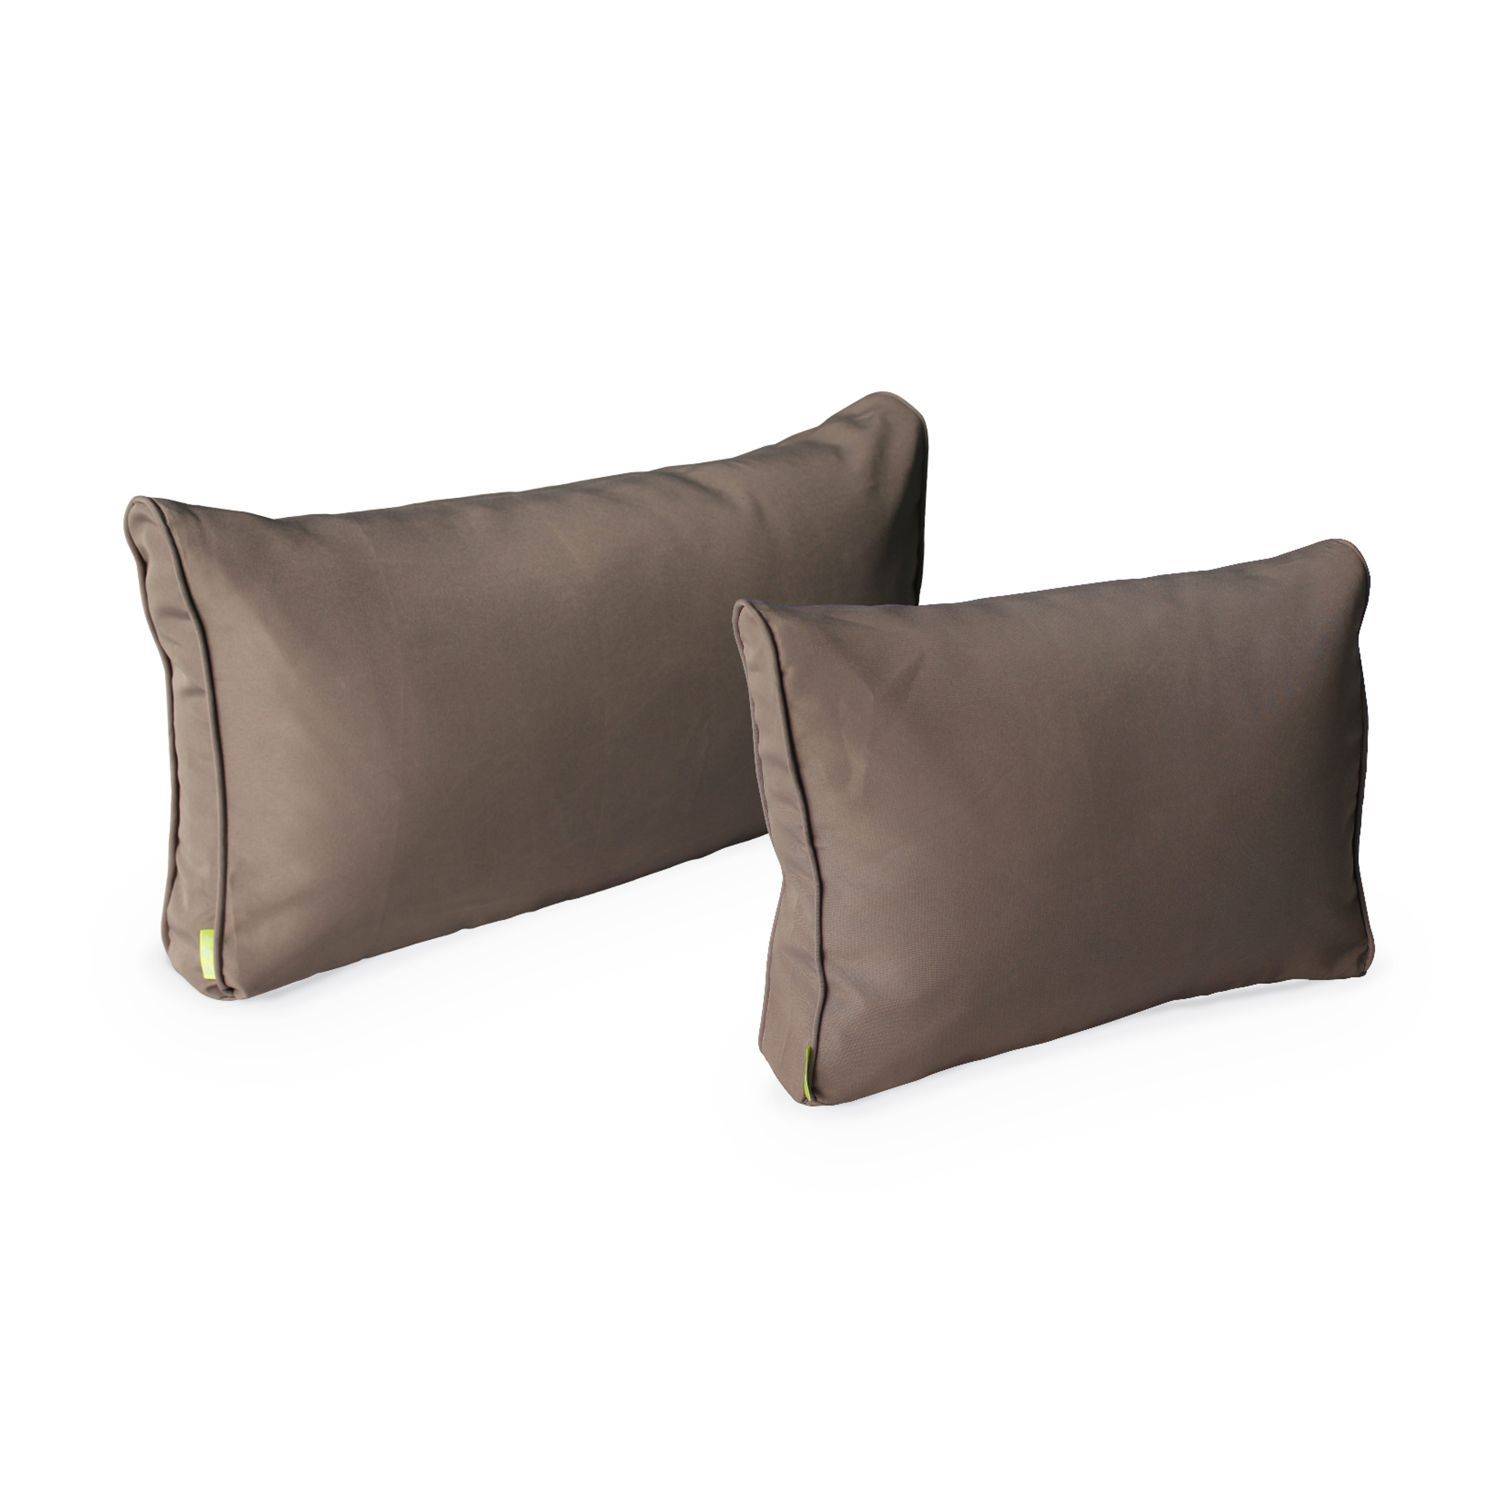 Complete set of cushion covers - Caligari - Beige-Brown,sweeek,Photo3